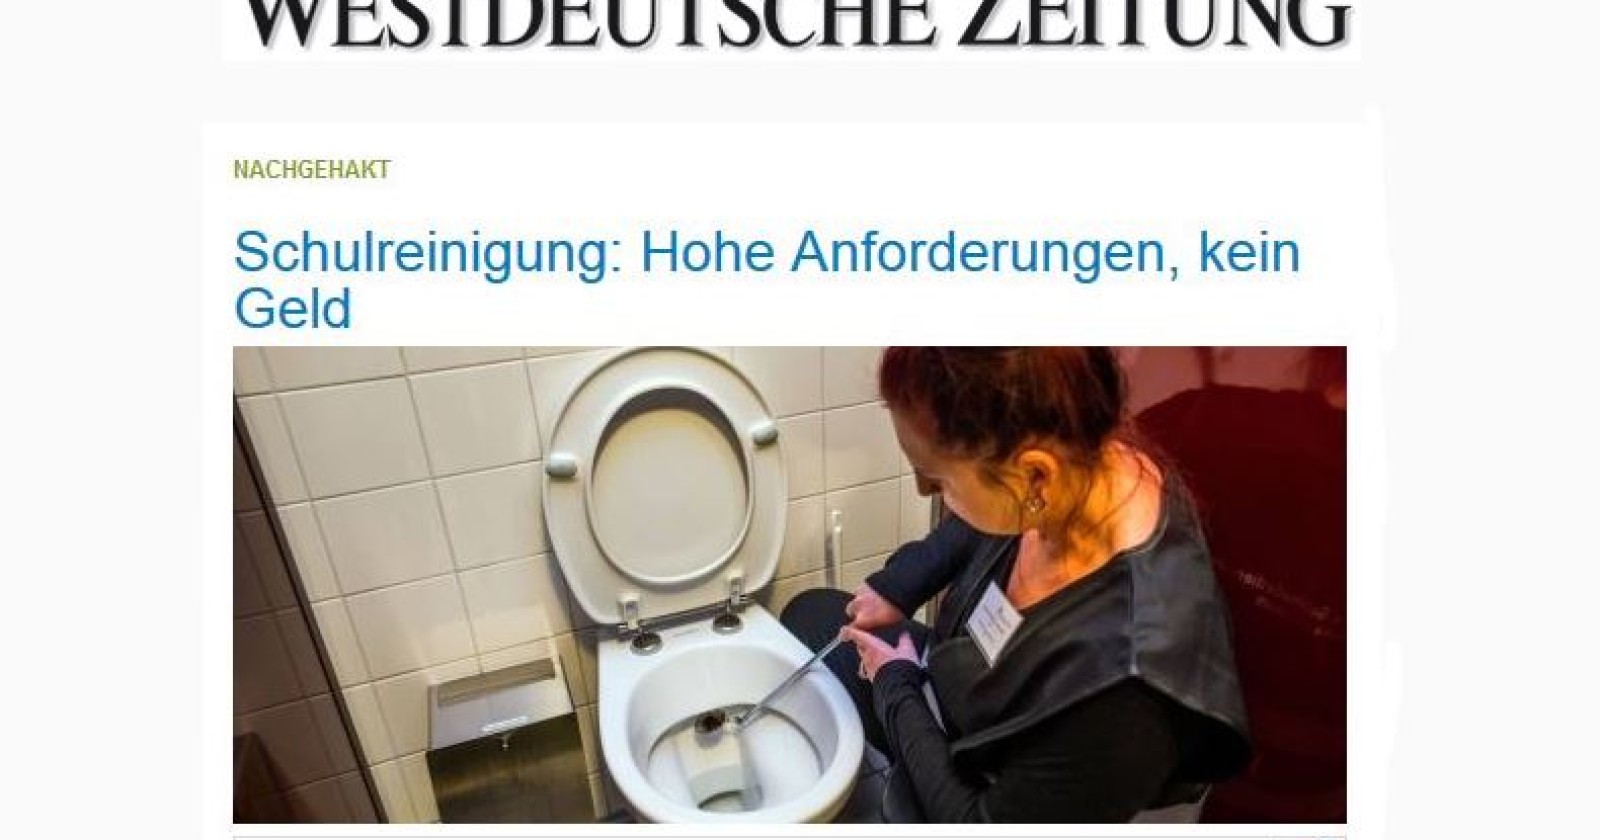 Westdeutsche Zeitung: Schulreinigung - hohe Anforderungen, kein Geld